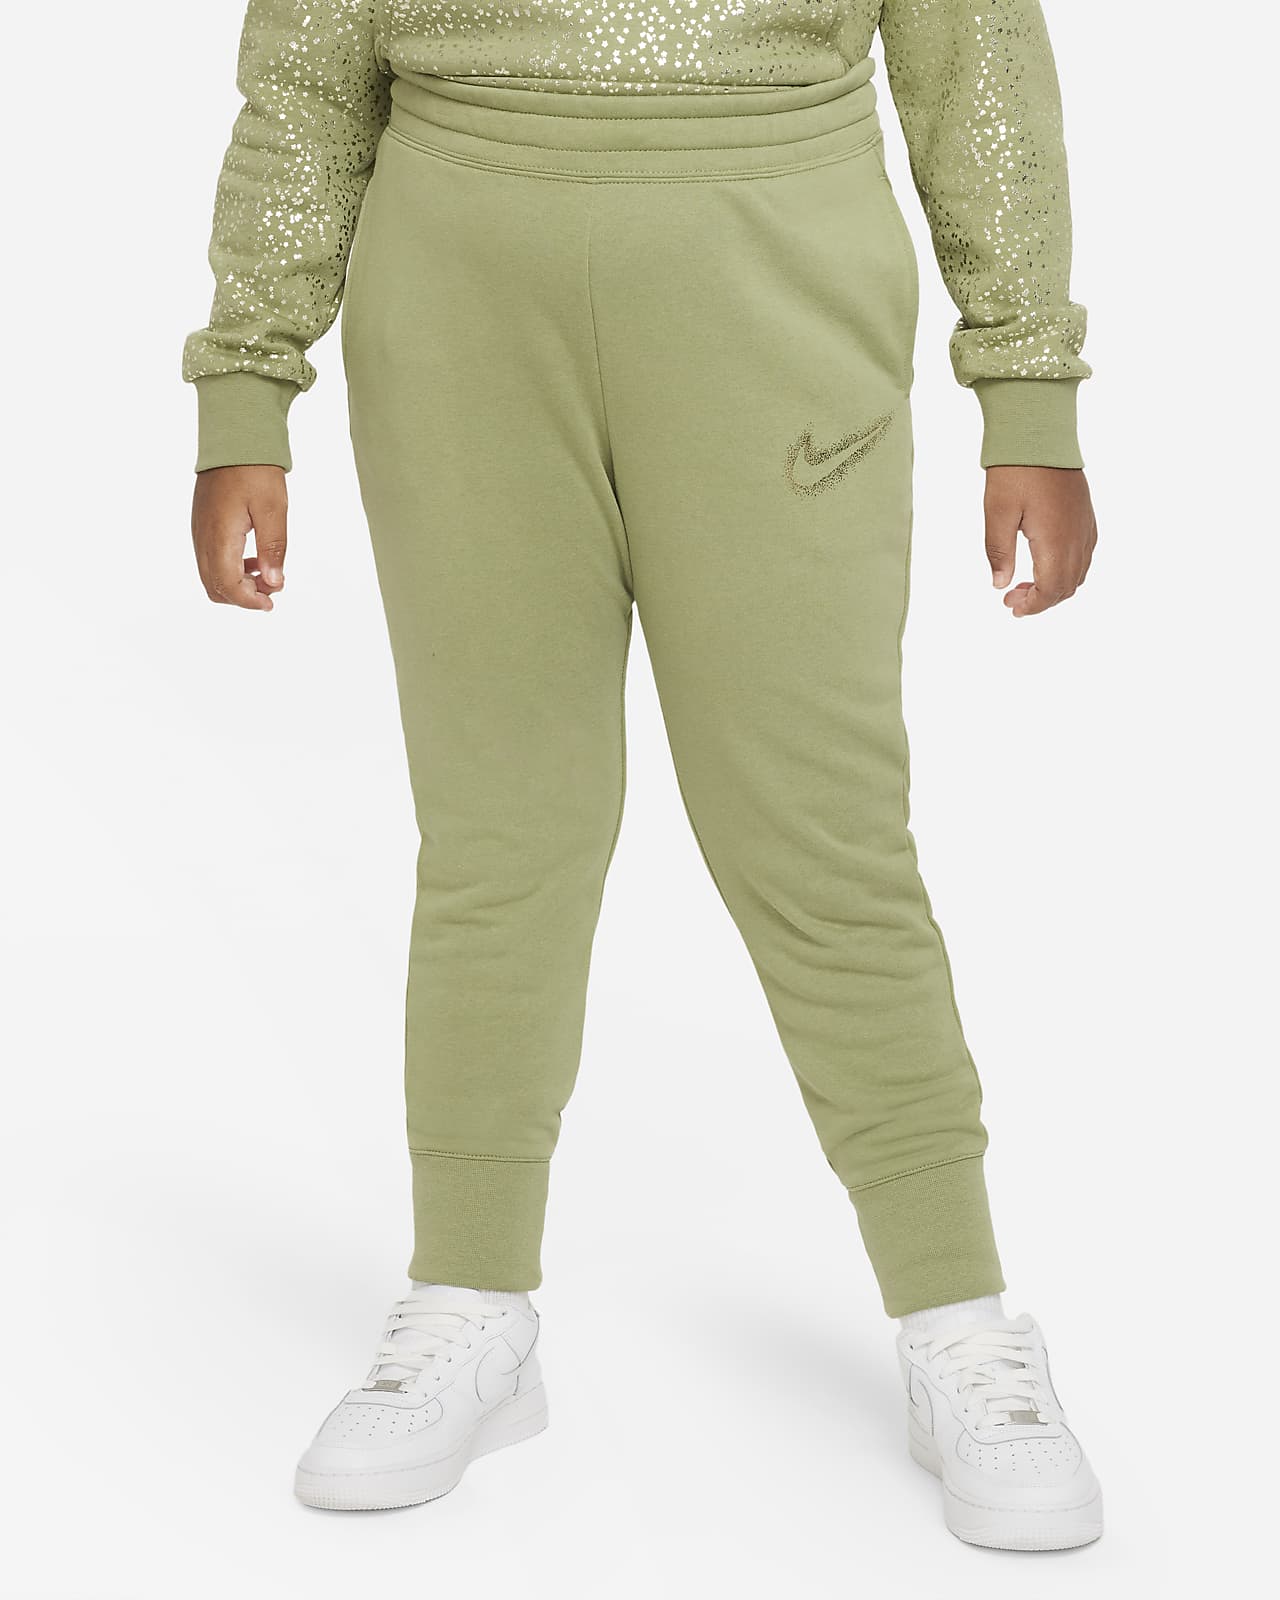 Nike Sportswear Kids' (Girls') Fleece Pants (Extended Size). Nike.com